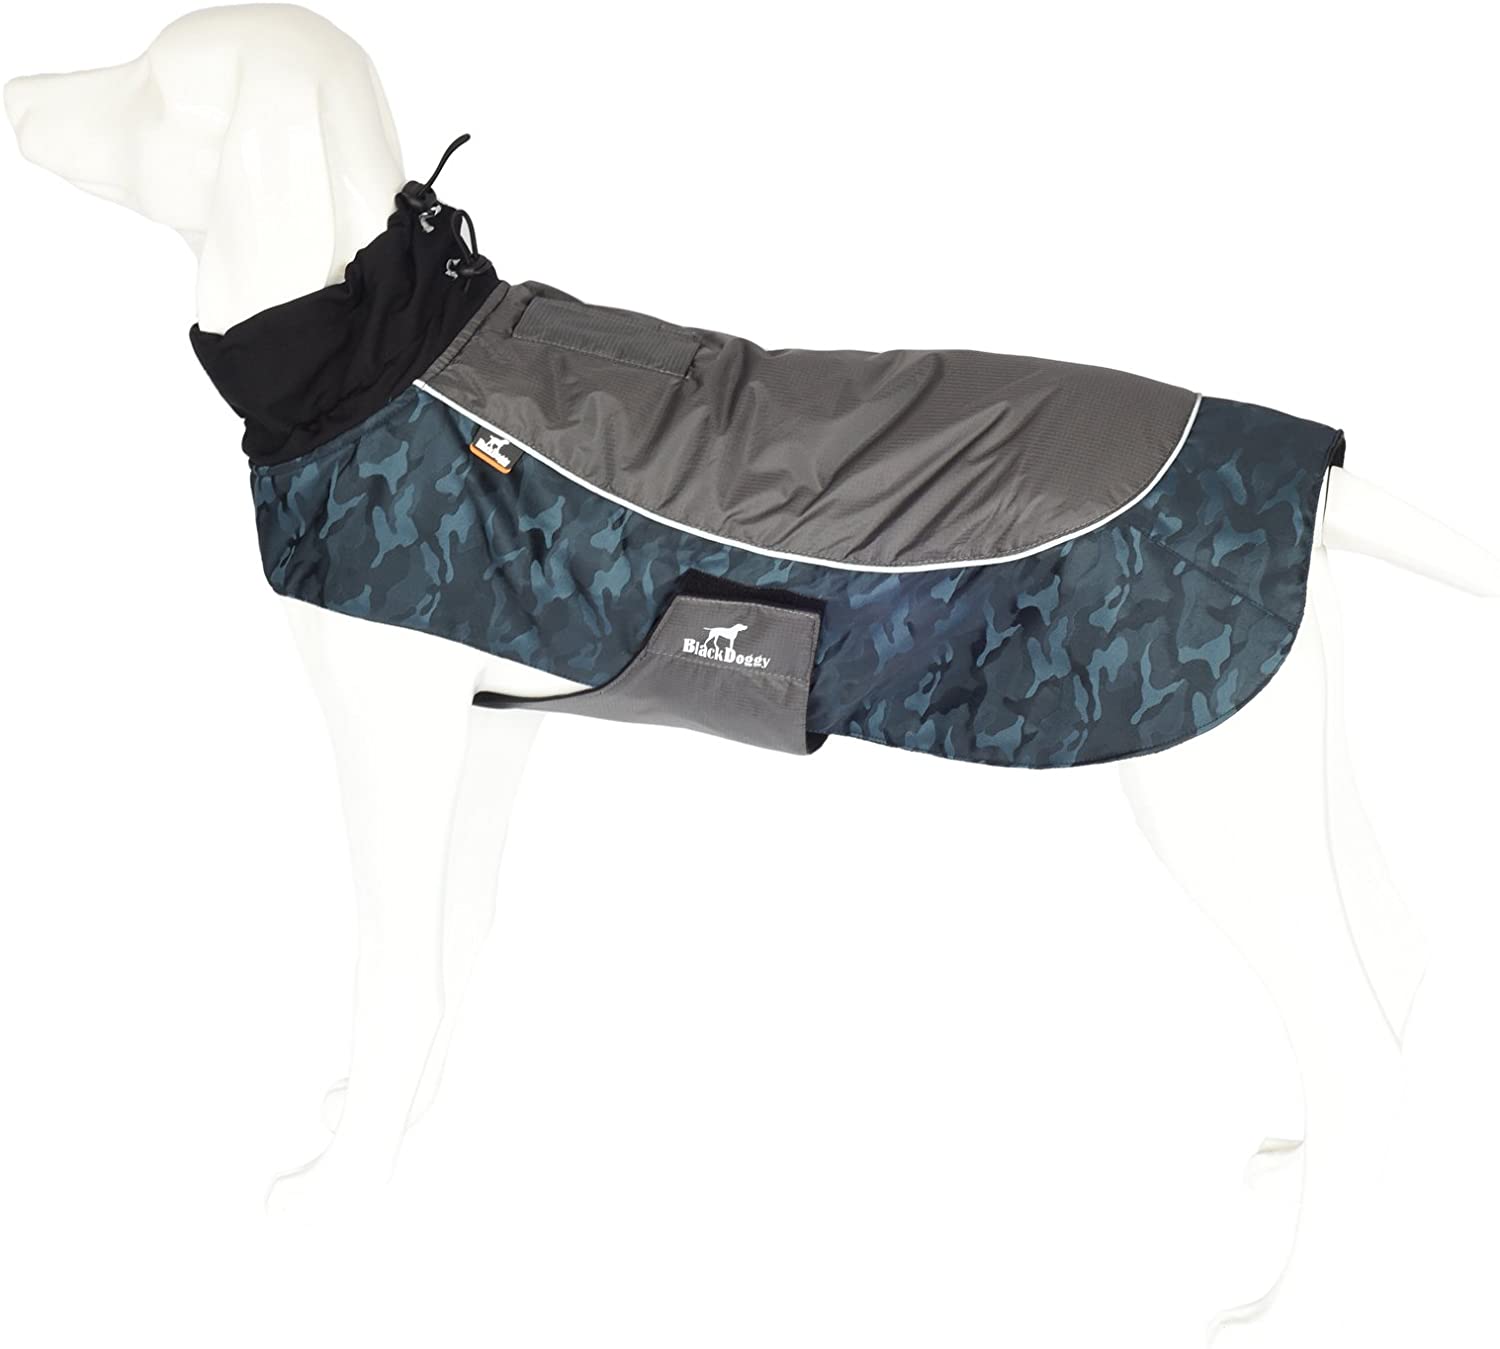  PALMFOX Impermeable Ropa para Mascotas Perro Invierno Caliente Chaleco Chaqueta Jacket Abrigo para Perros Grandes Ropa para Mascotas de Navidad Azul XL 